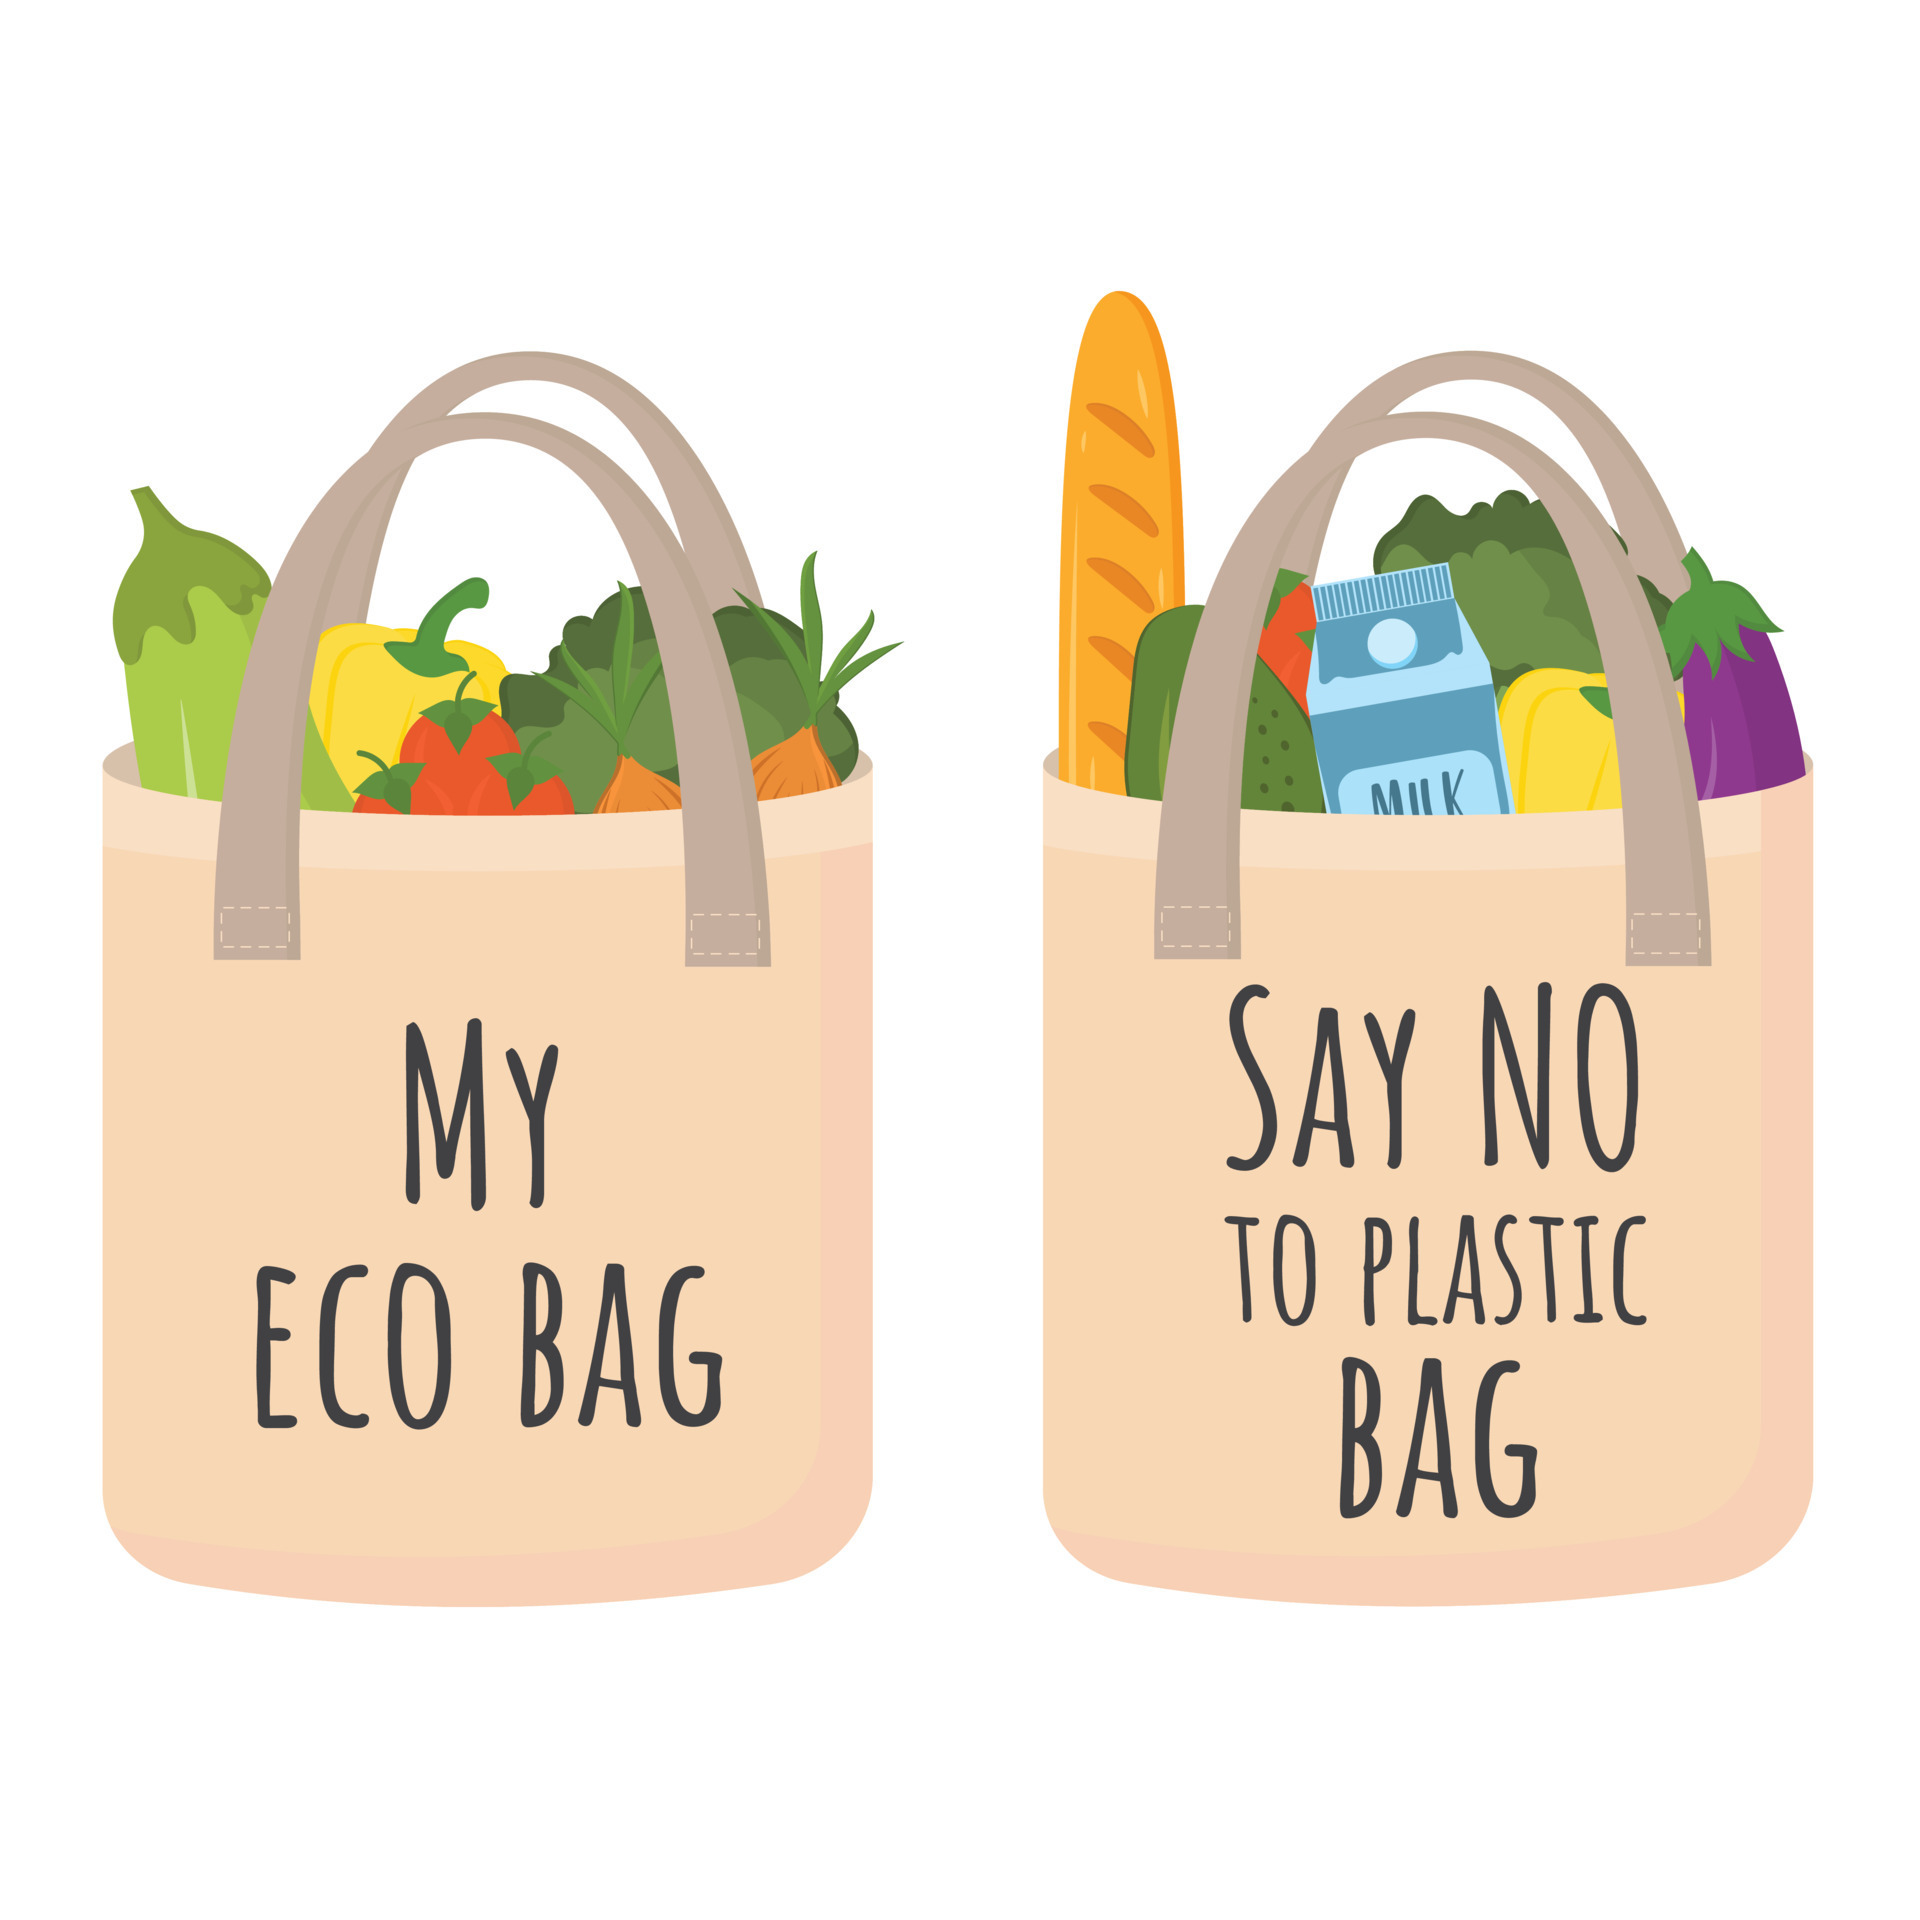 No plastic bags. Vector eco friendly textile recycling bag vs